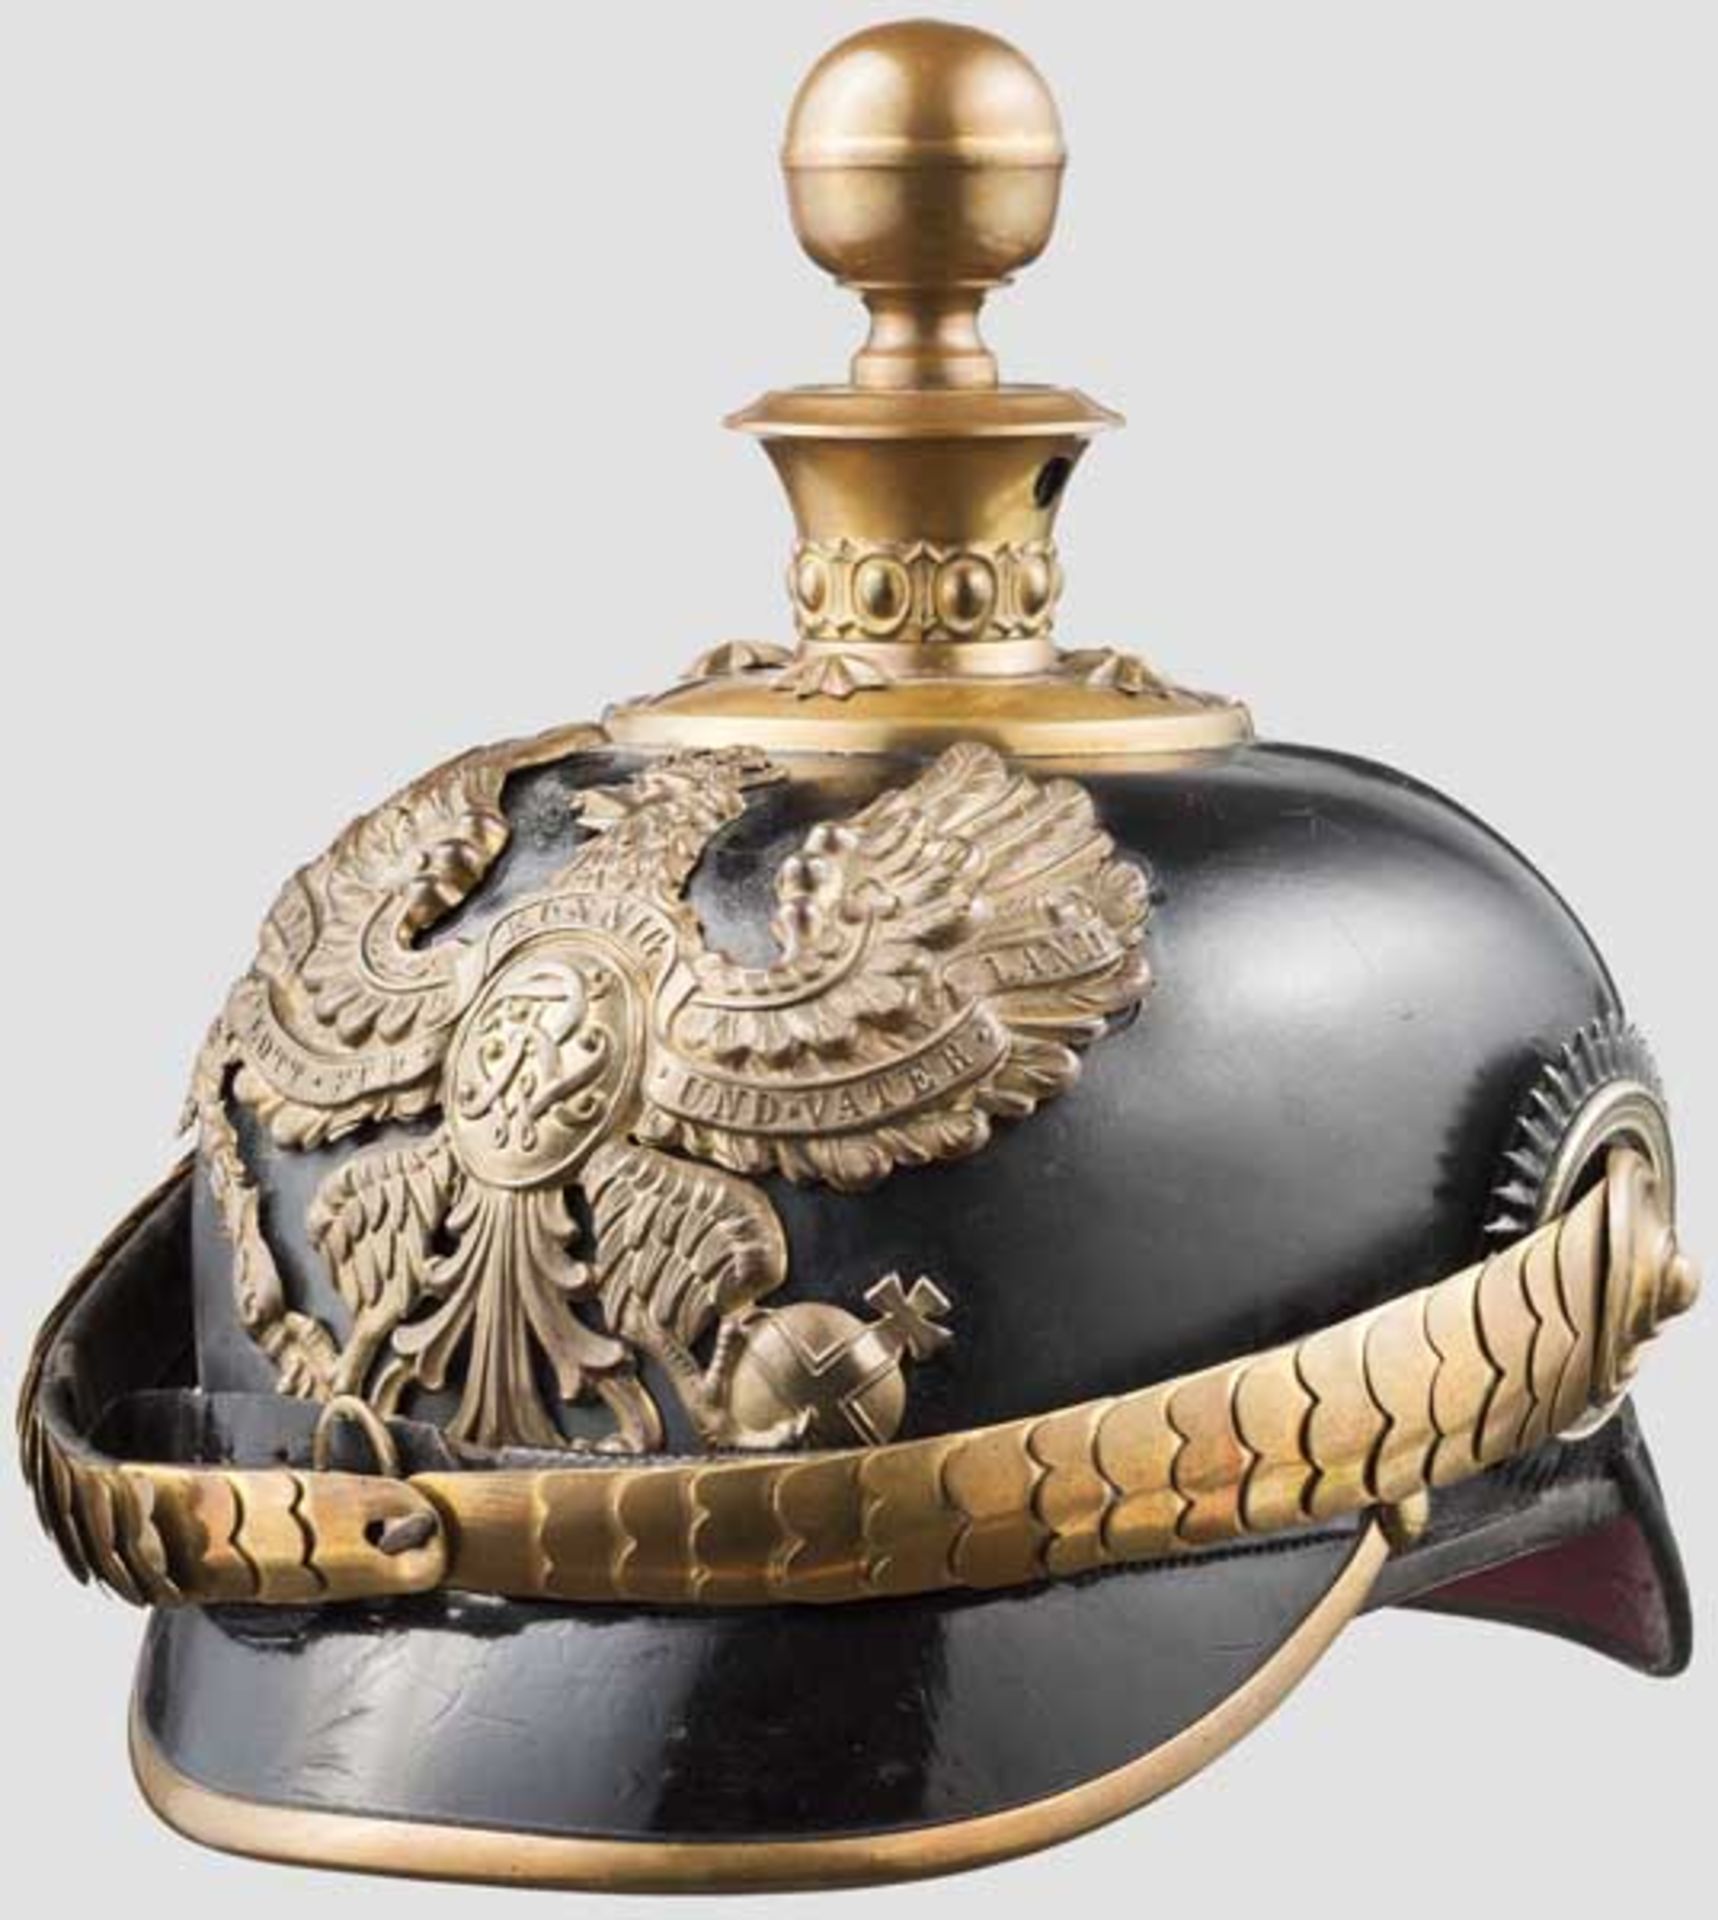 Helm für Offiziere der Artillerie, um 1900 Schwarz lackierte Lederglocke (minimal krakeliert) mit